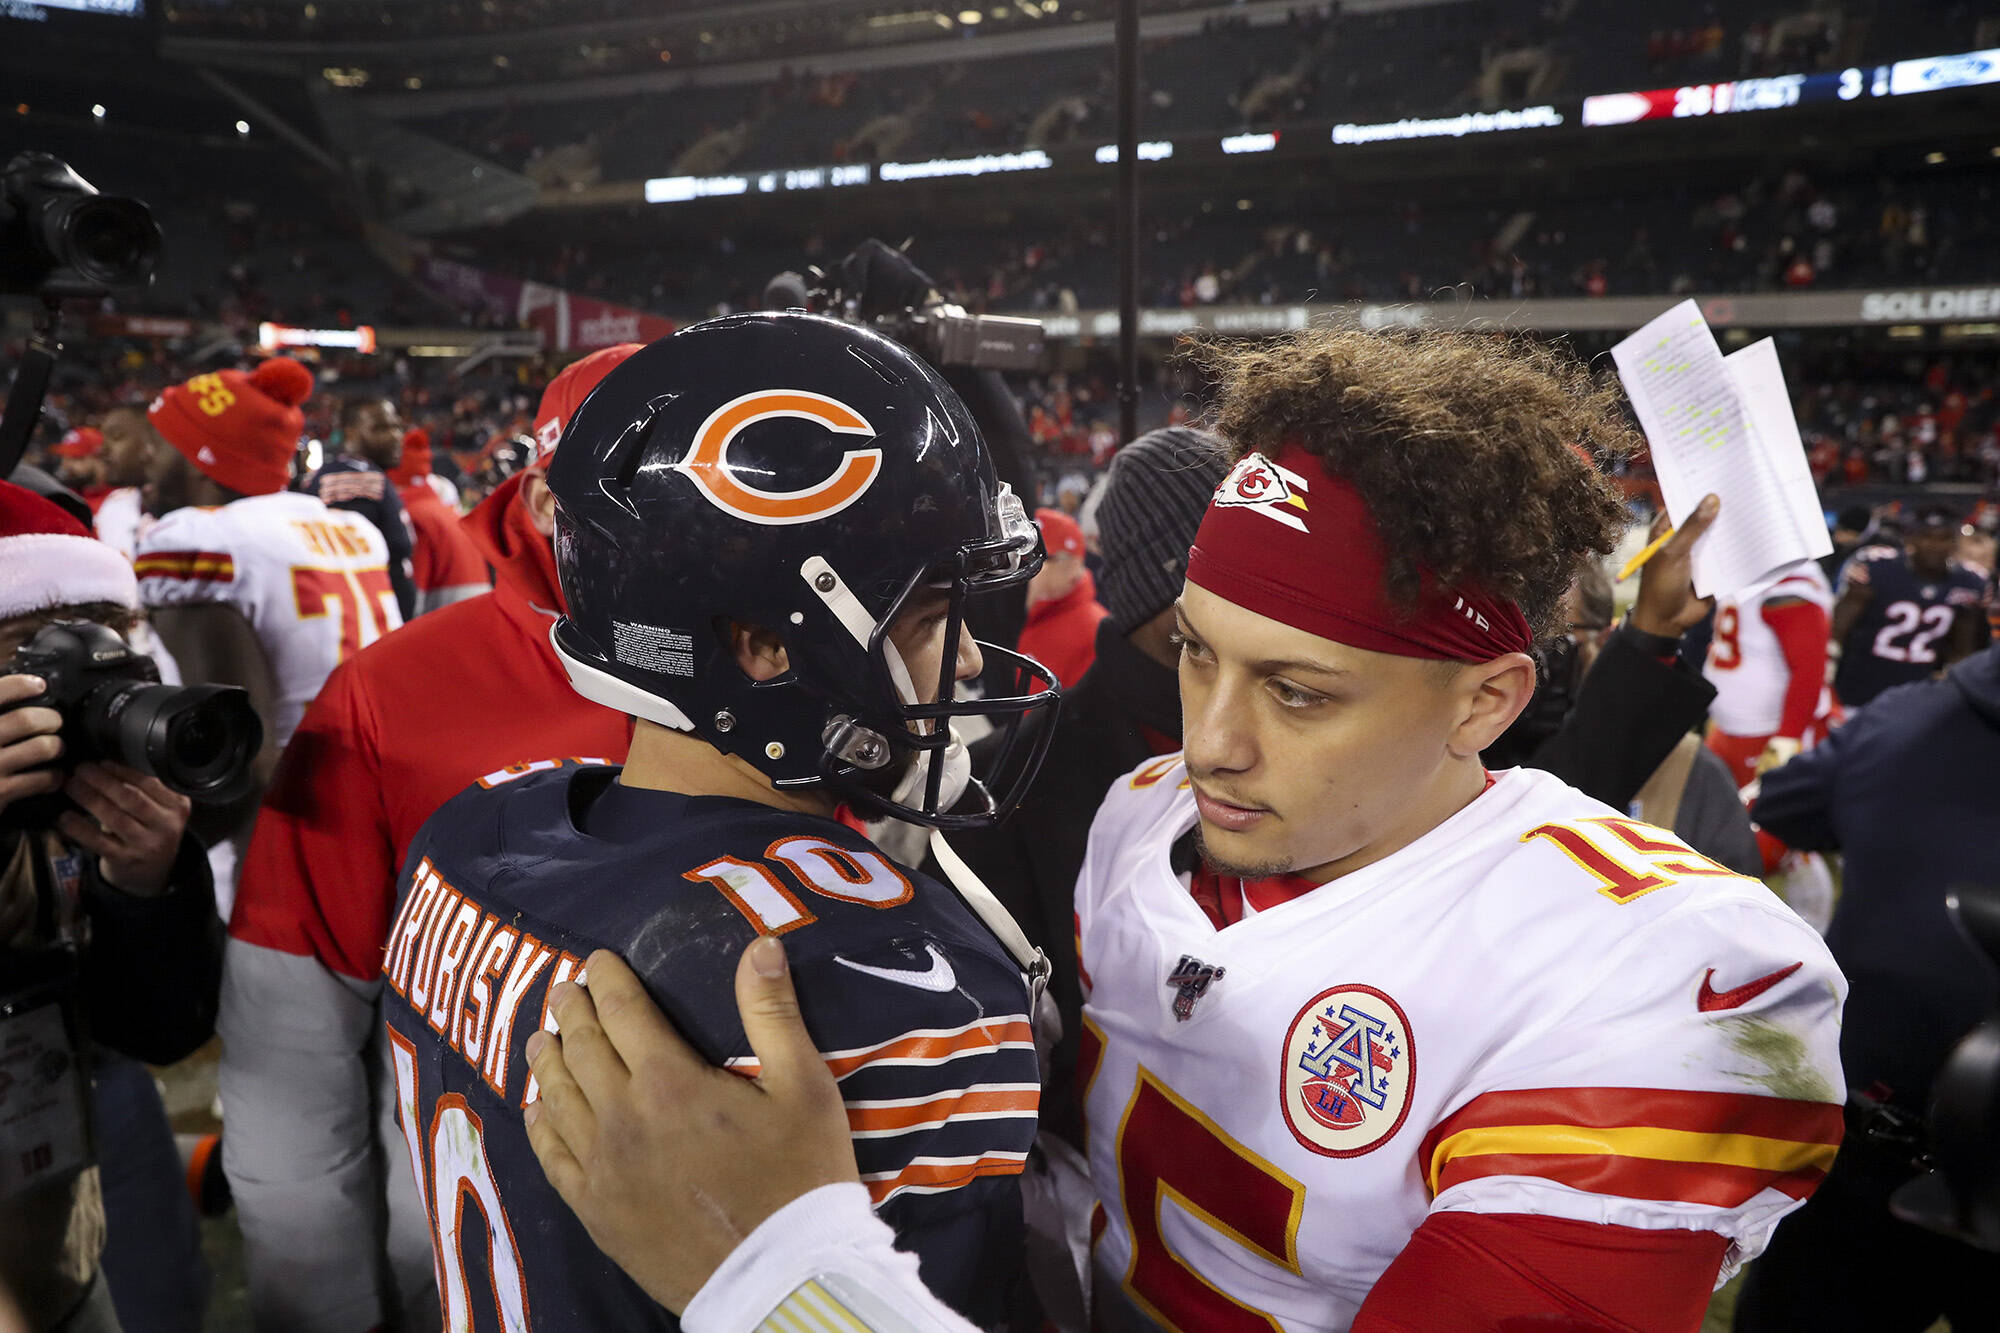 December 22, 2019, Chicago, IL, USA: Chicago Bears quarterback Mitch Trubisky hugs Kansas City Chiefs quarterback Patric